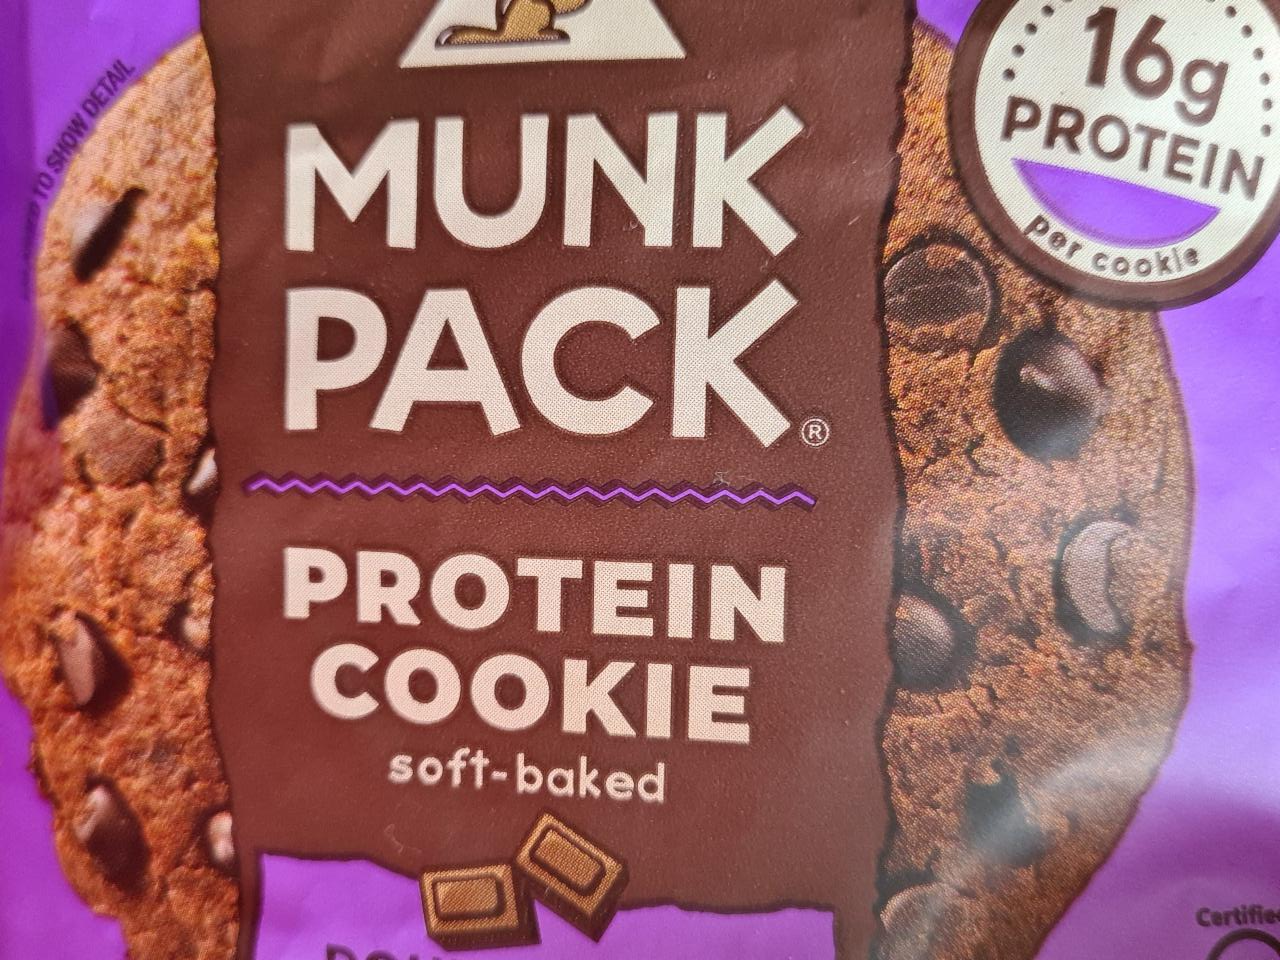 Фото - протеиновое печенье Munk Pack